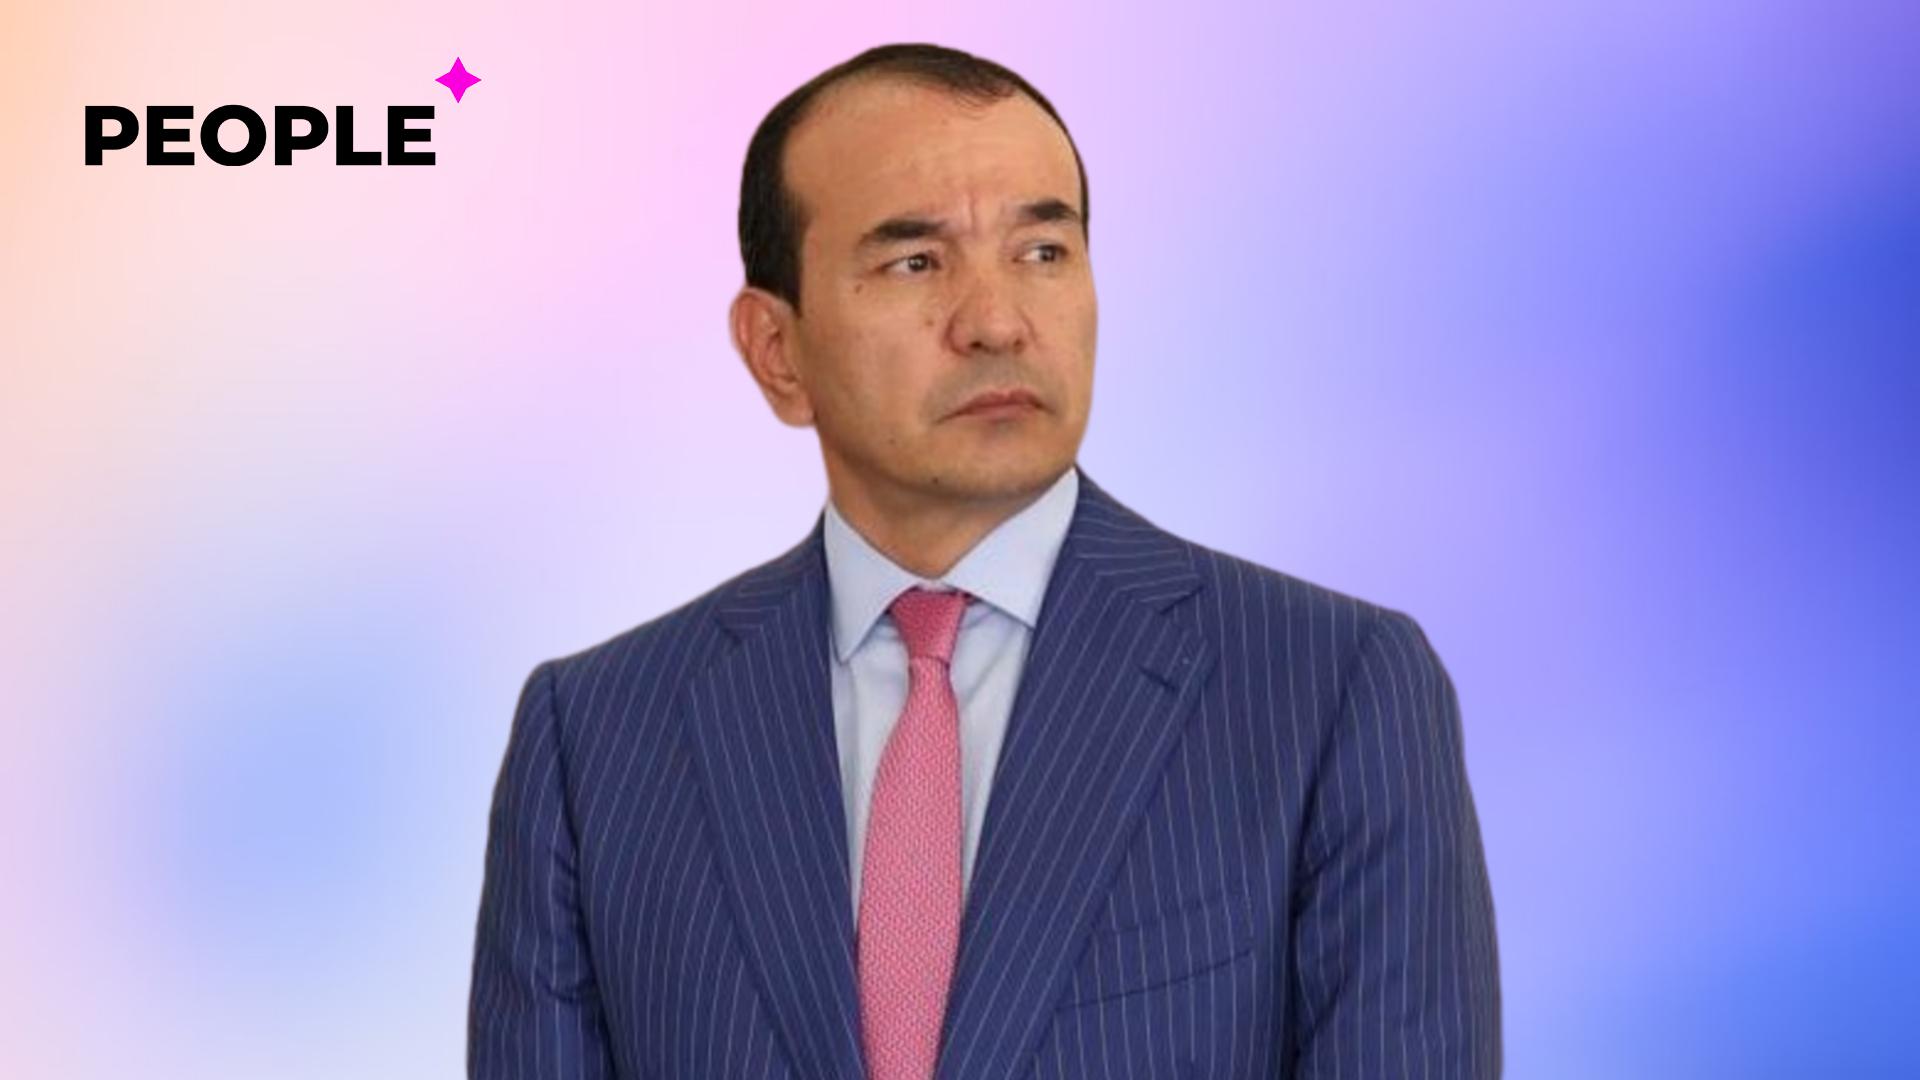 Озодбек Назарбеков посвятил новую песню медицинским работникам Узбекистана — видео 